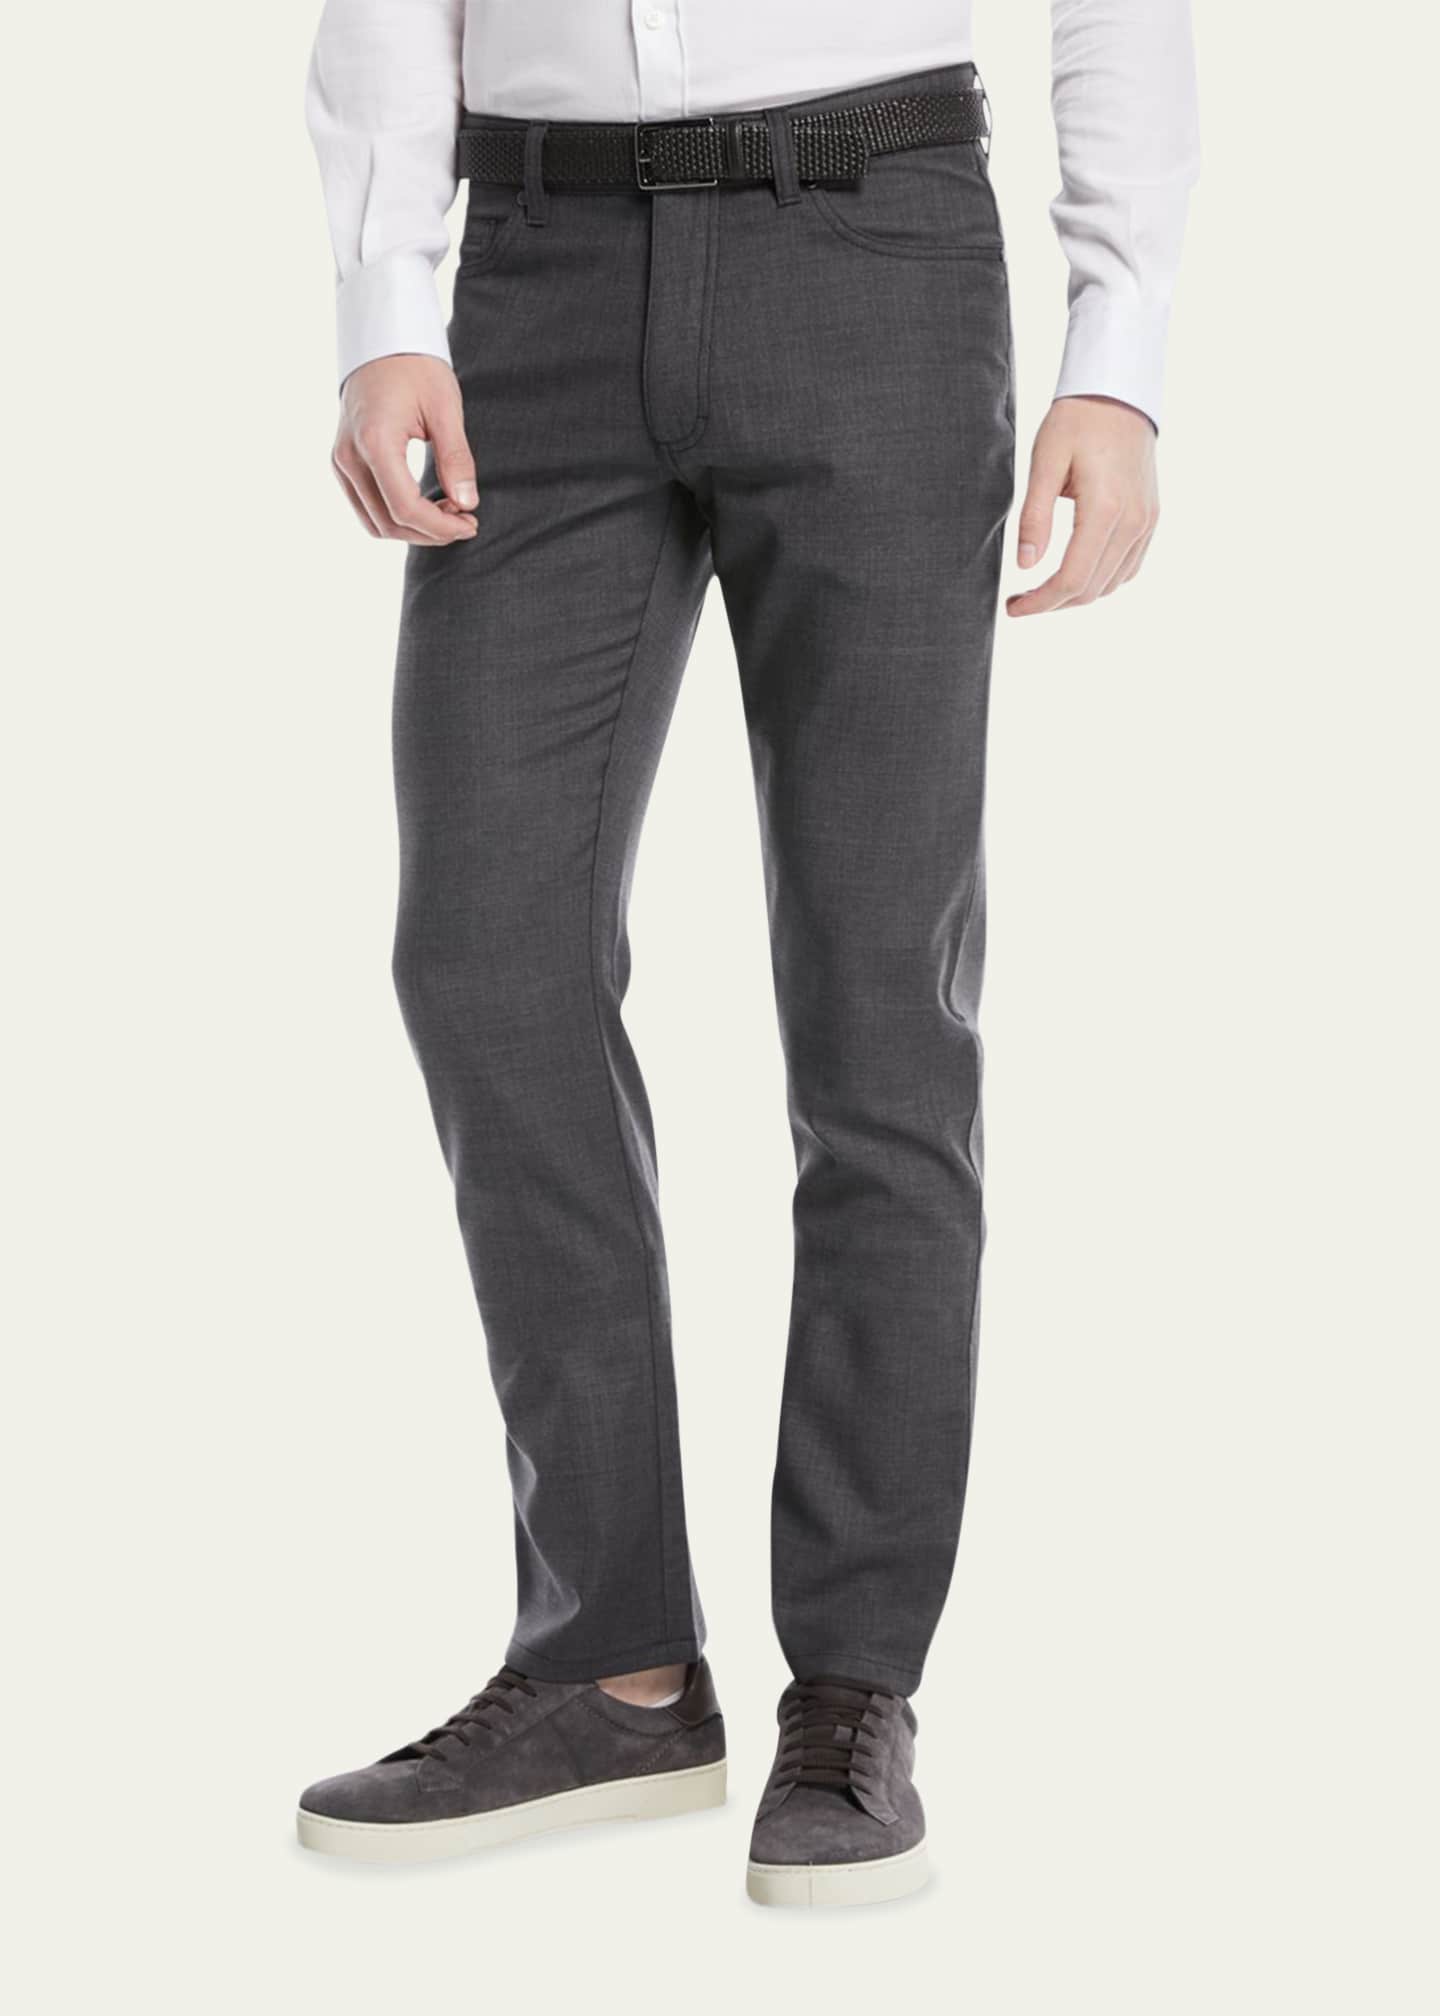 ZEGNA Men's Regular-Fit Textured Wool-Blend 5-Pocket Pants Image 2 of 4